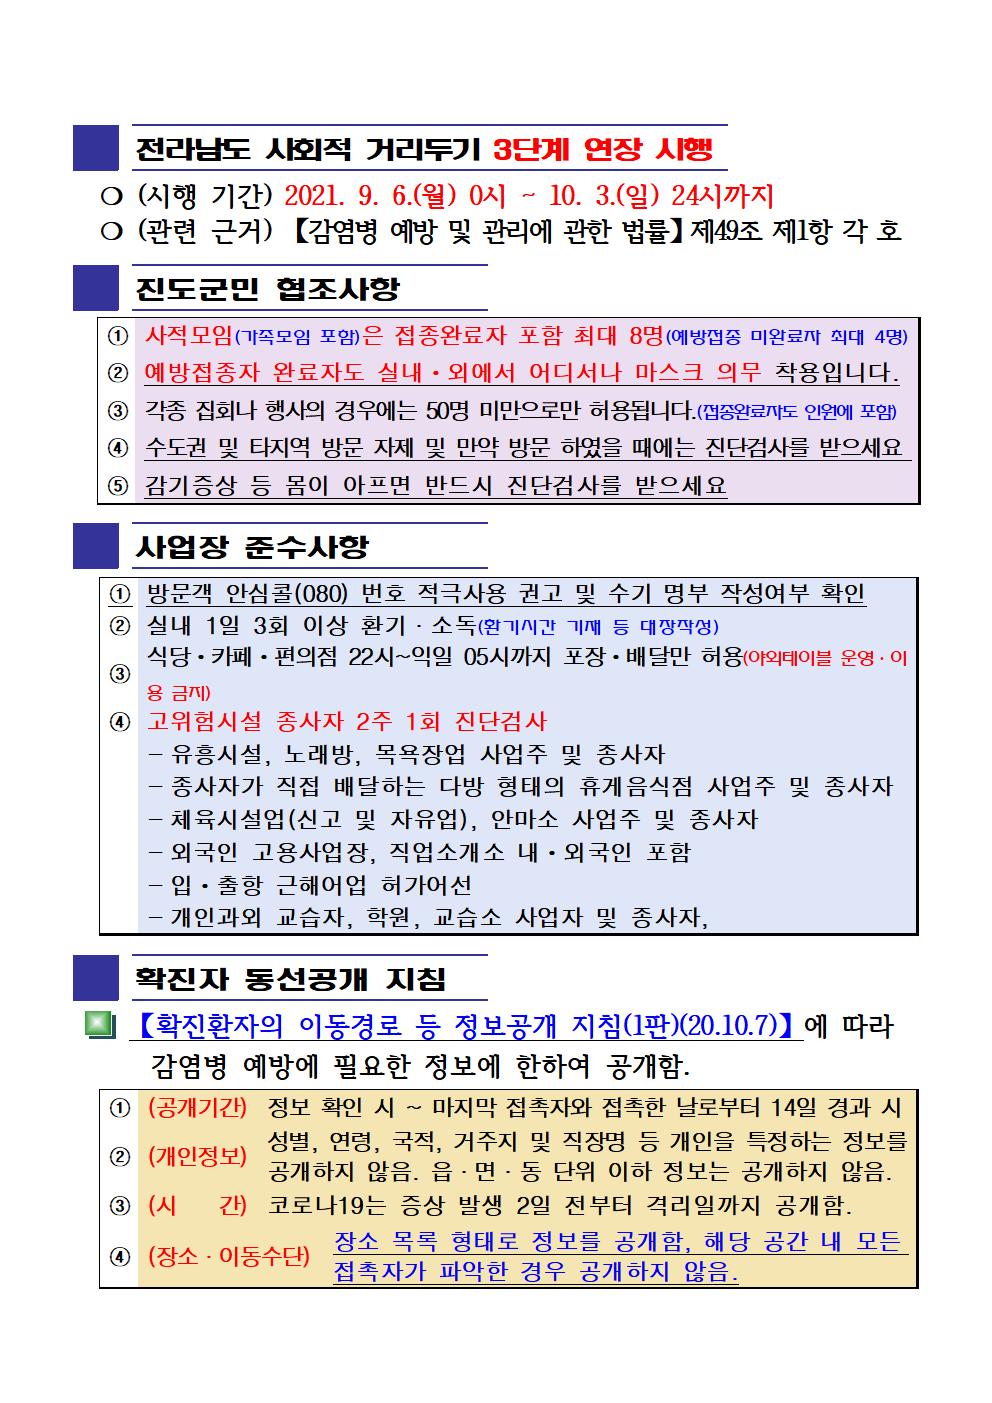 2021년 코로나19 대응 일일상황보고(9월 21일 24시 기준) 첨부#2